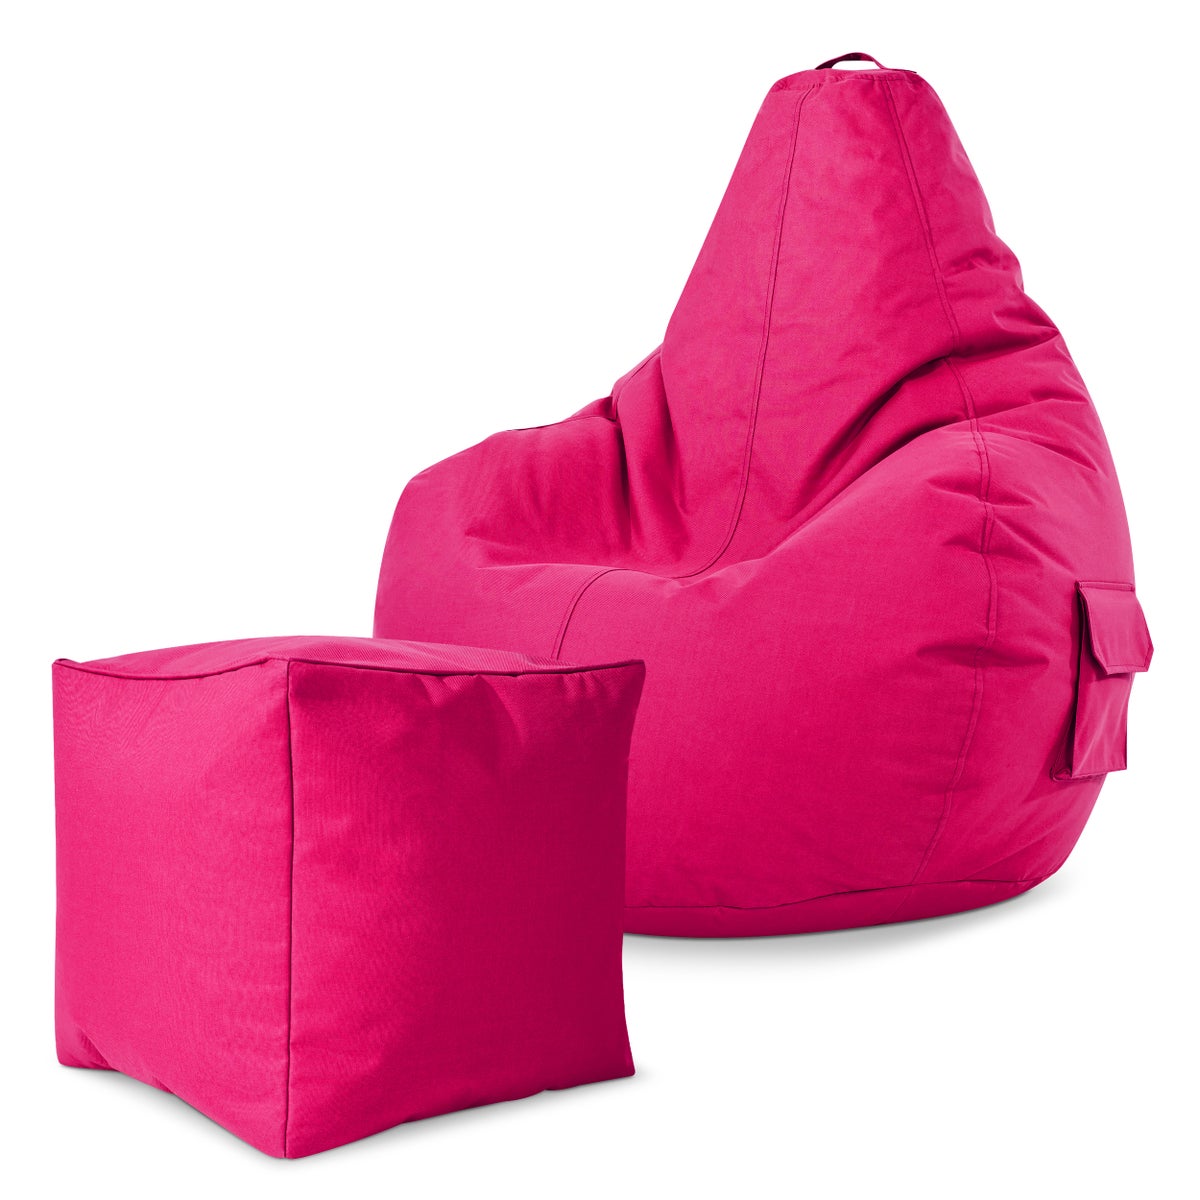 Green Bean© 2er Set Sitzsack + Hocker - fertig befüllt - robust waschbar schmutzabweisend - Kinder & Erwachsene Bean Bag Bodenkissen Lounge Sitzhocker Relax-Sessel Gamer Gamingstuhl Pouf - Pink